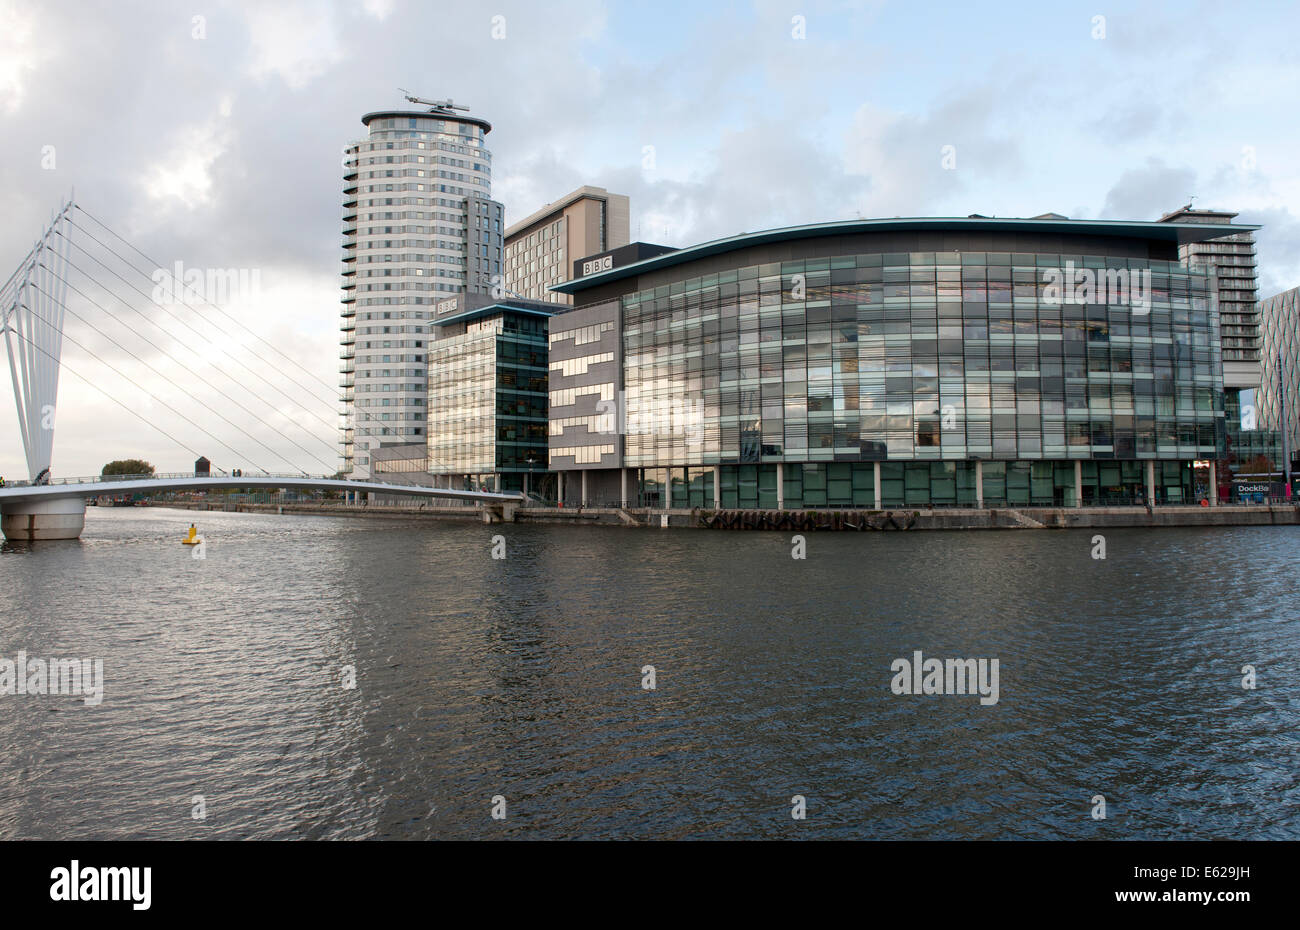 Les studios de la BBC à Mediacity Salford Quays, Manchester, Angleterre, RU Banque D'Images